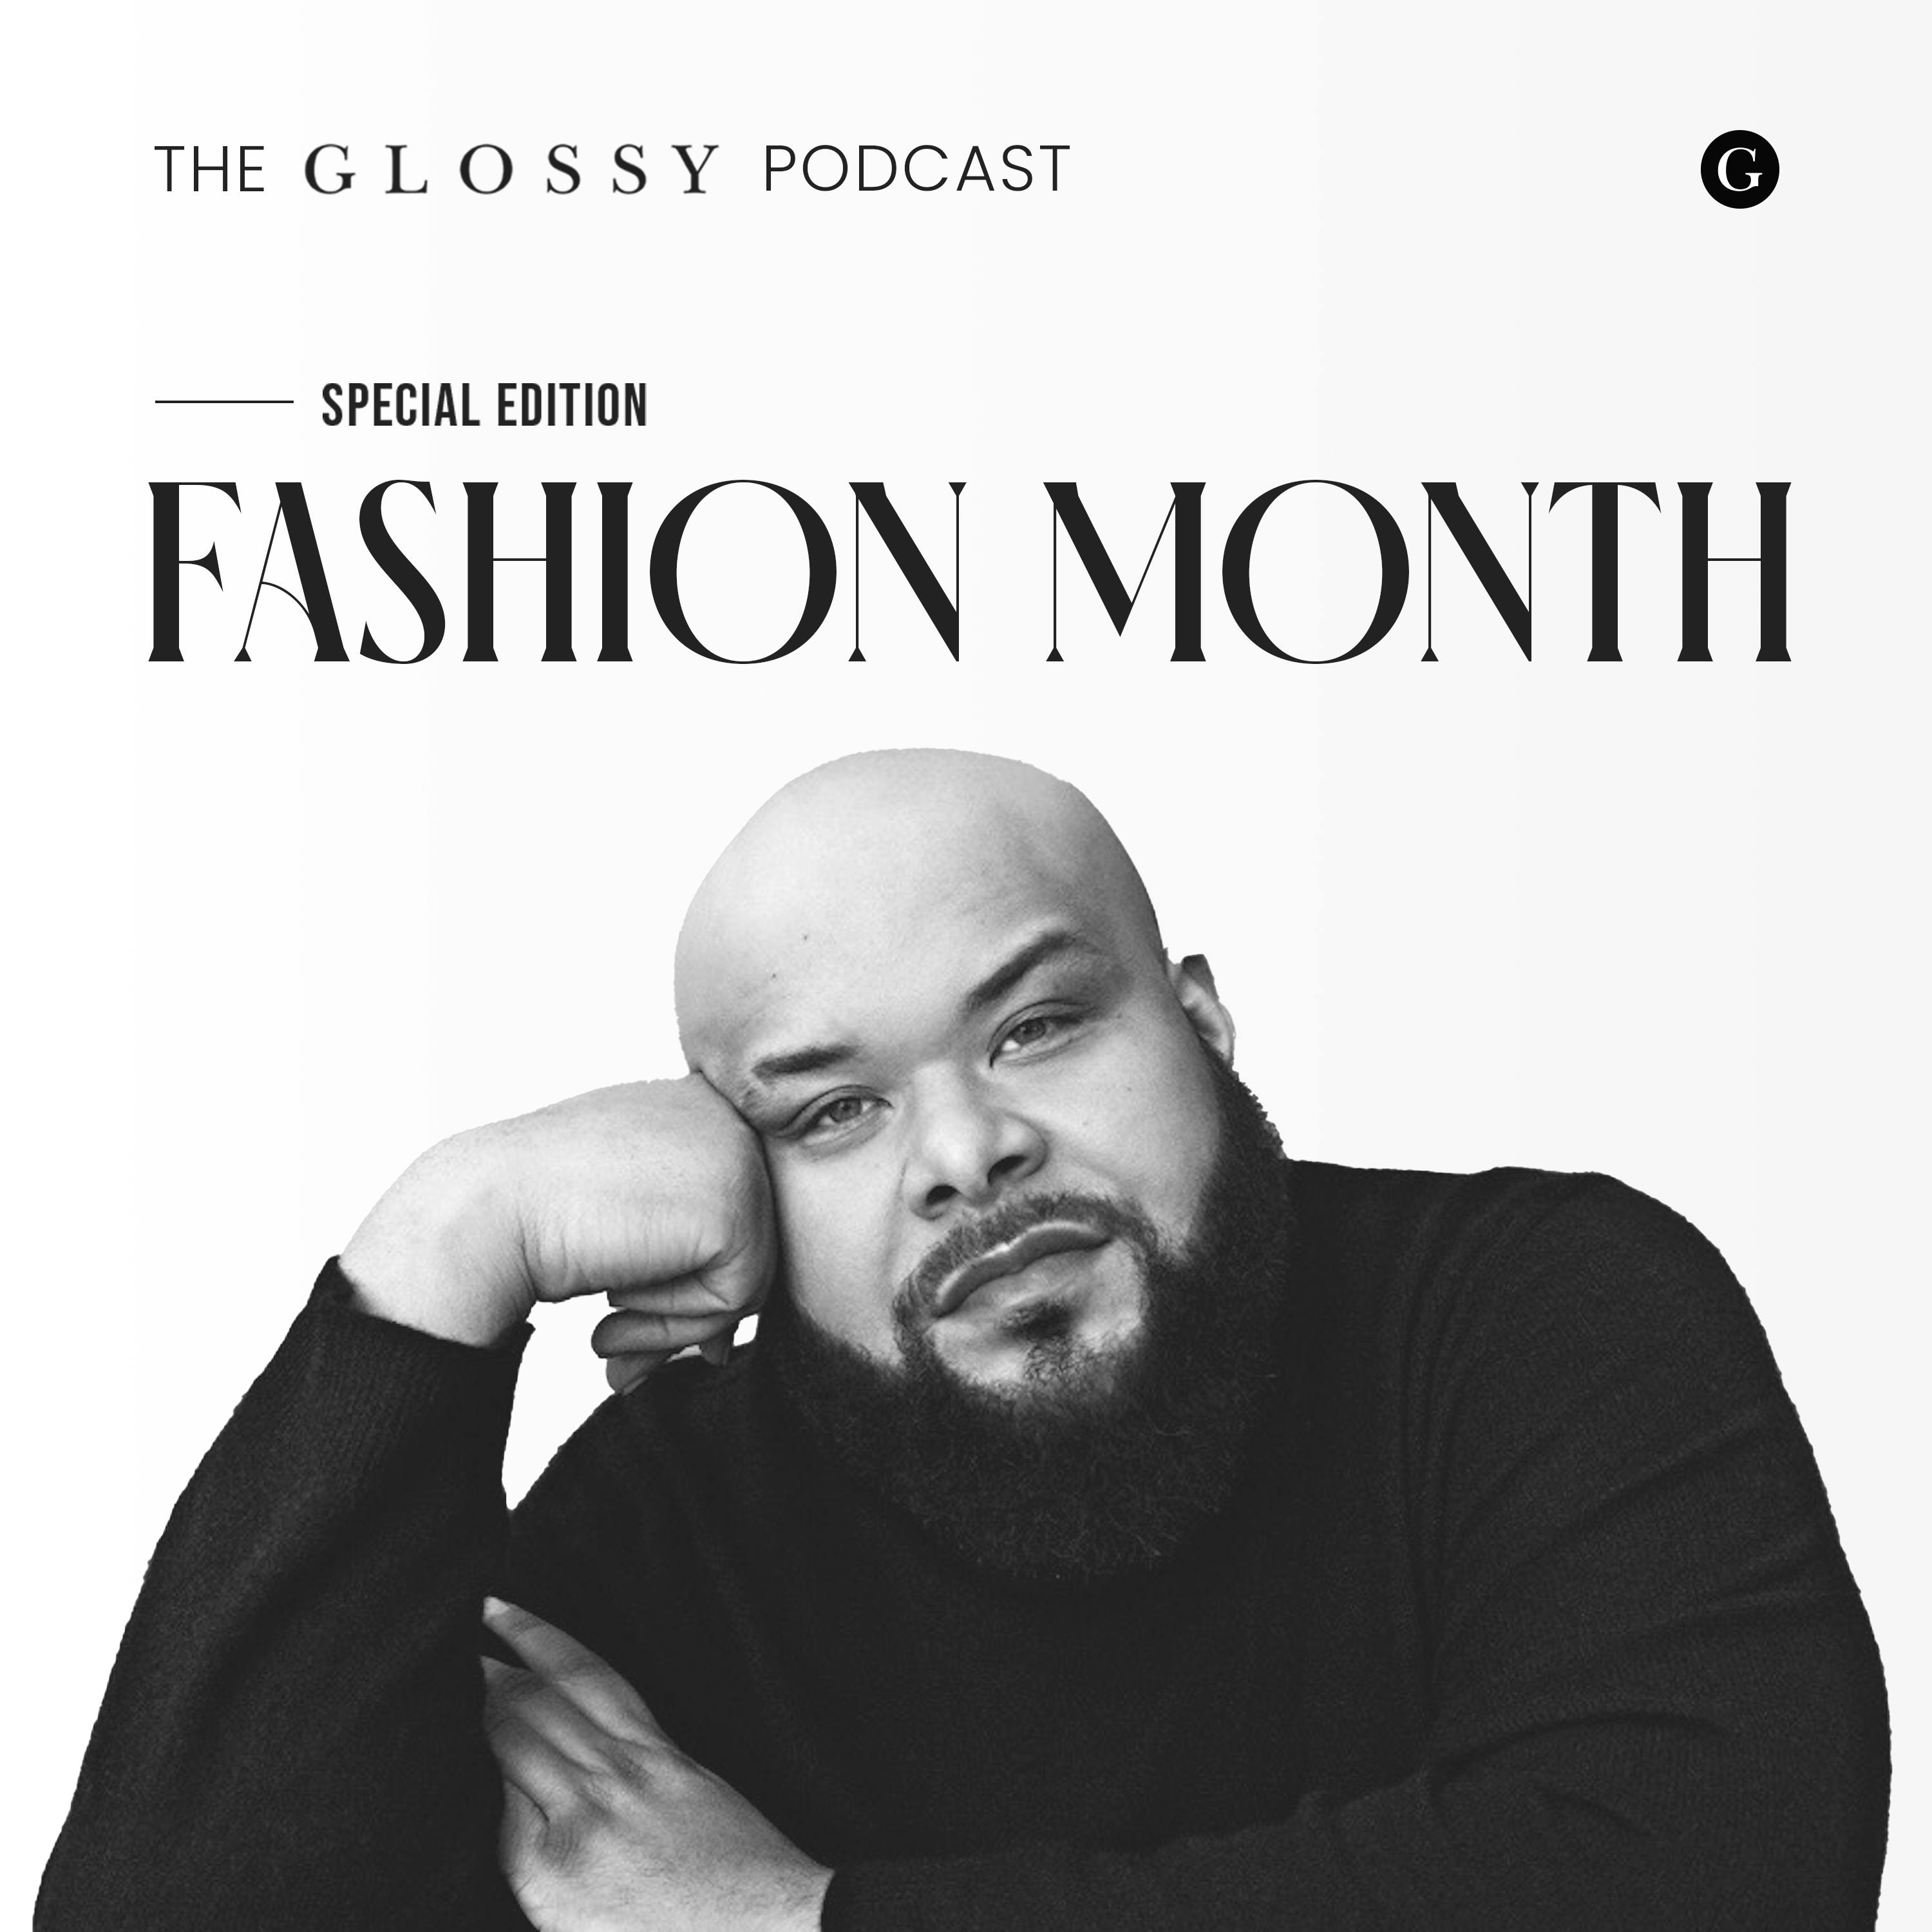 New York Fashion Week Edition: Sergio Hudson - As an African American sportswear designer, I’m ‘a unicorn’